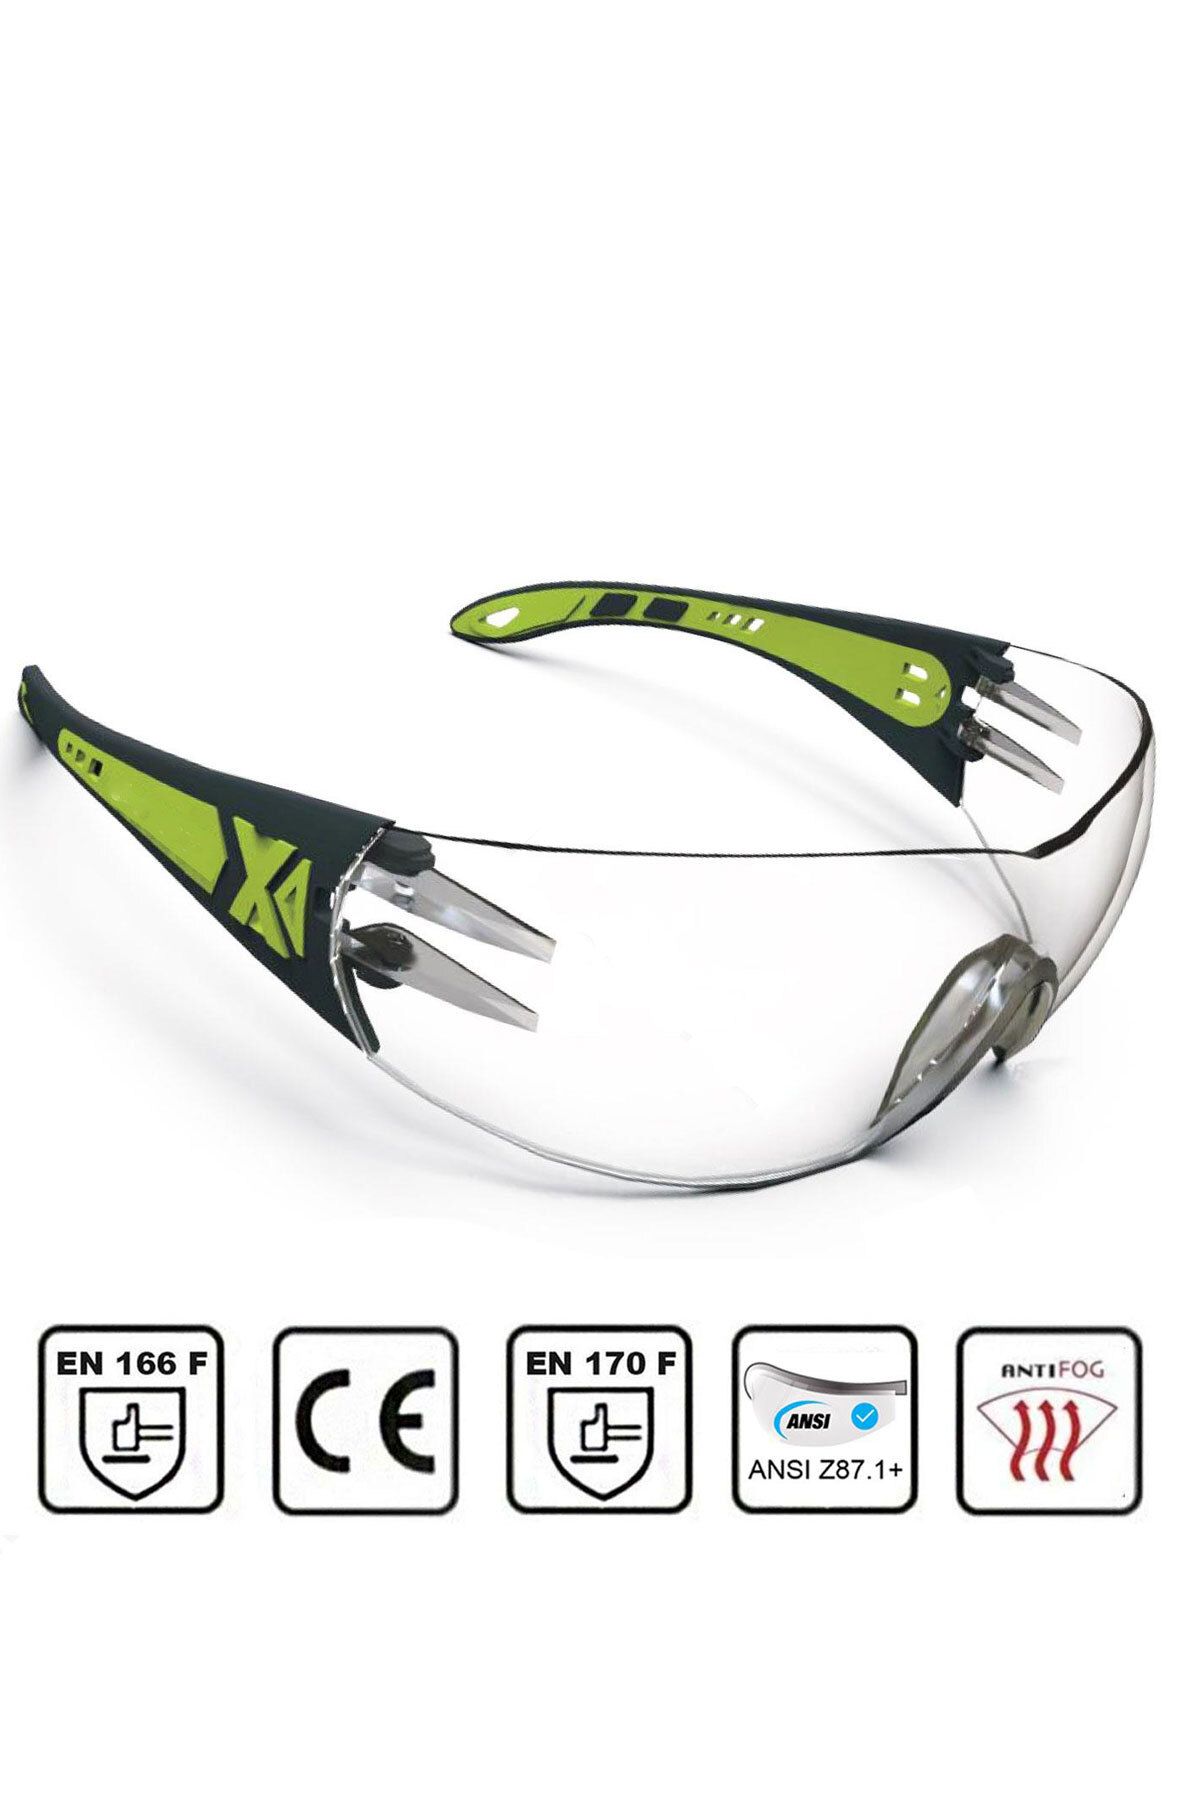 NZB Bisiklet Koşu Outdoor Motor Gözlüğü Uv Korumalı Sporcu Bisikletçi Buğulanmaz Gözlük Silikon Kulaklık